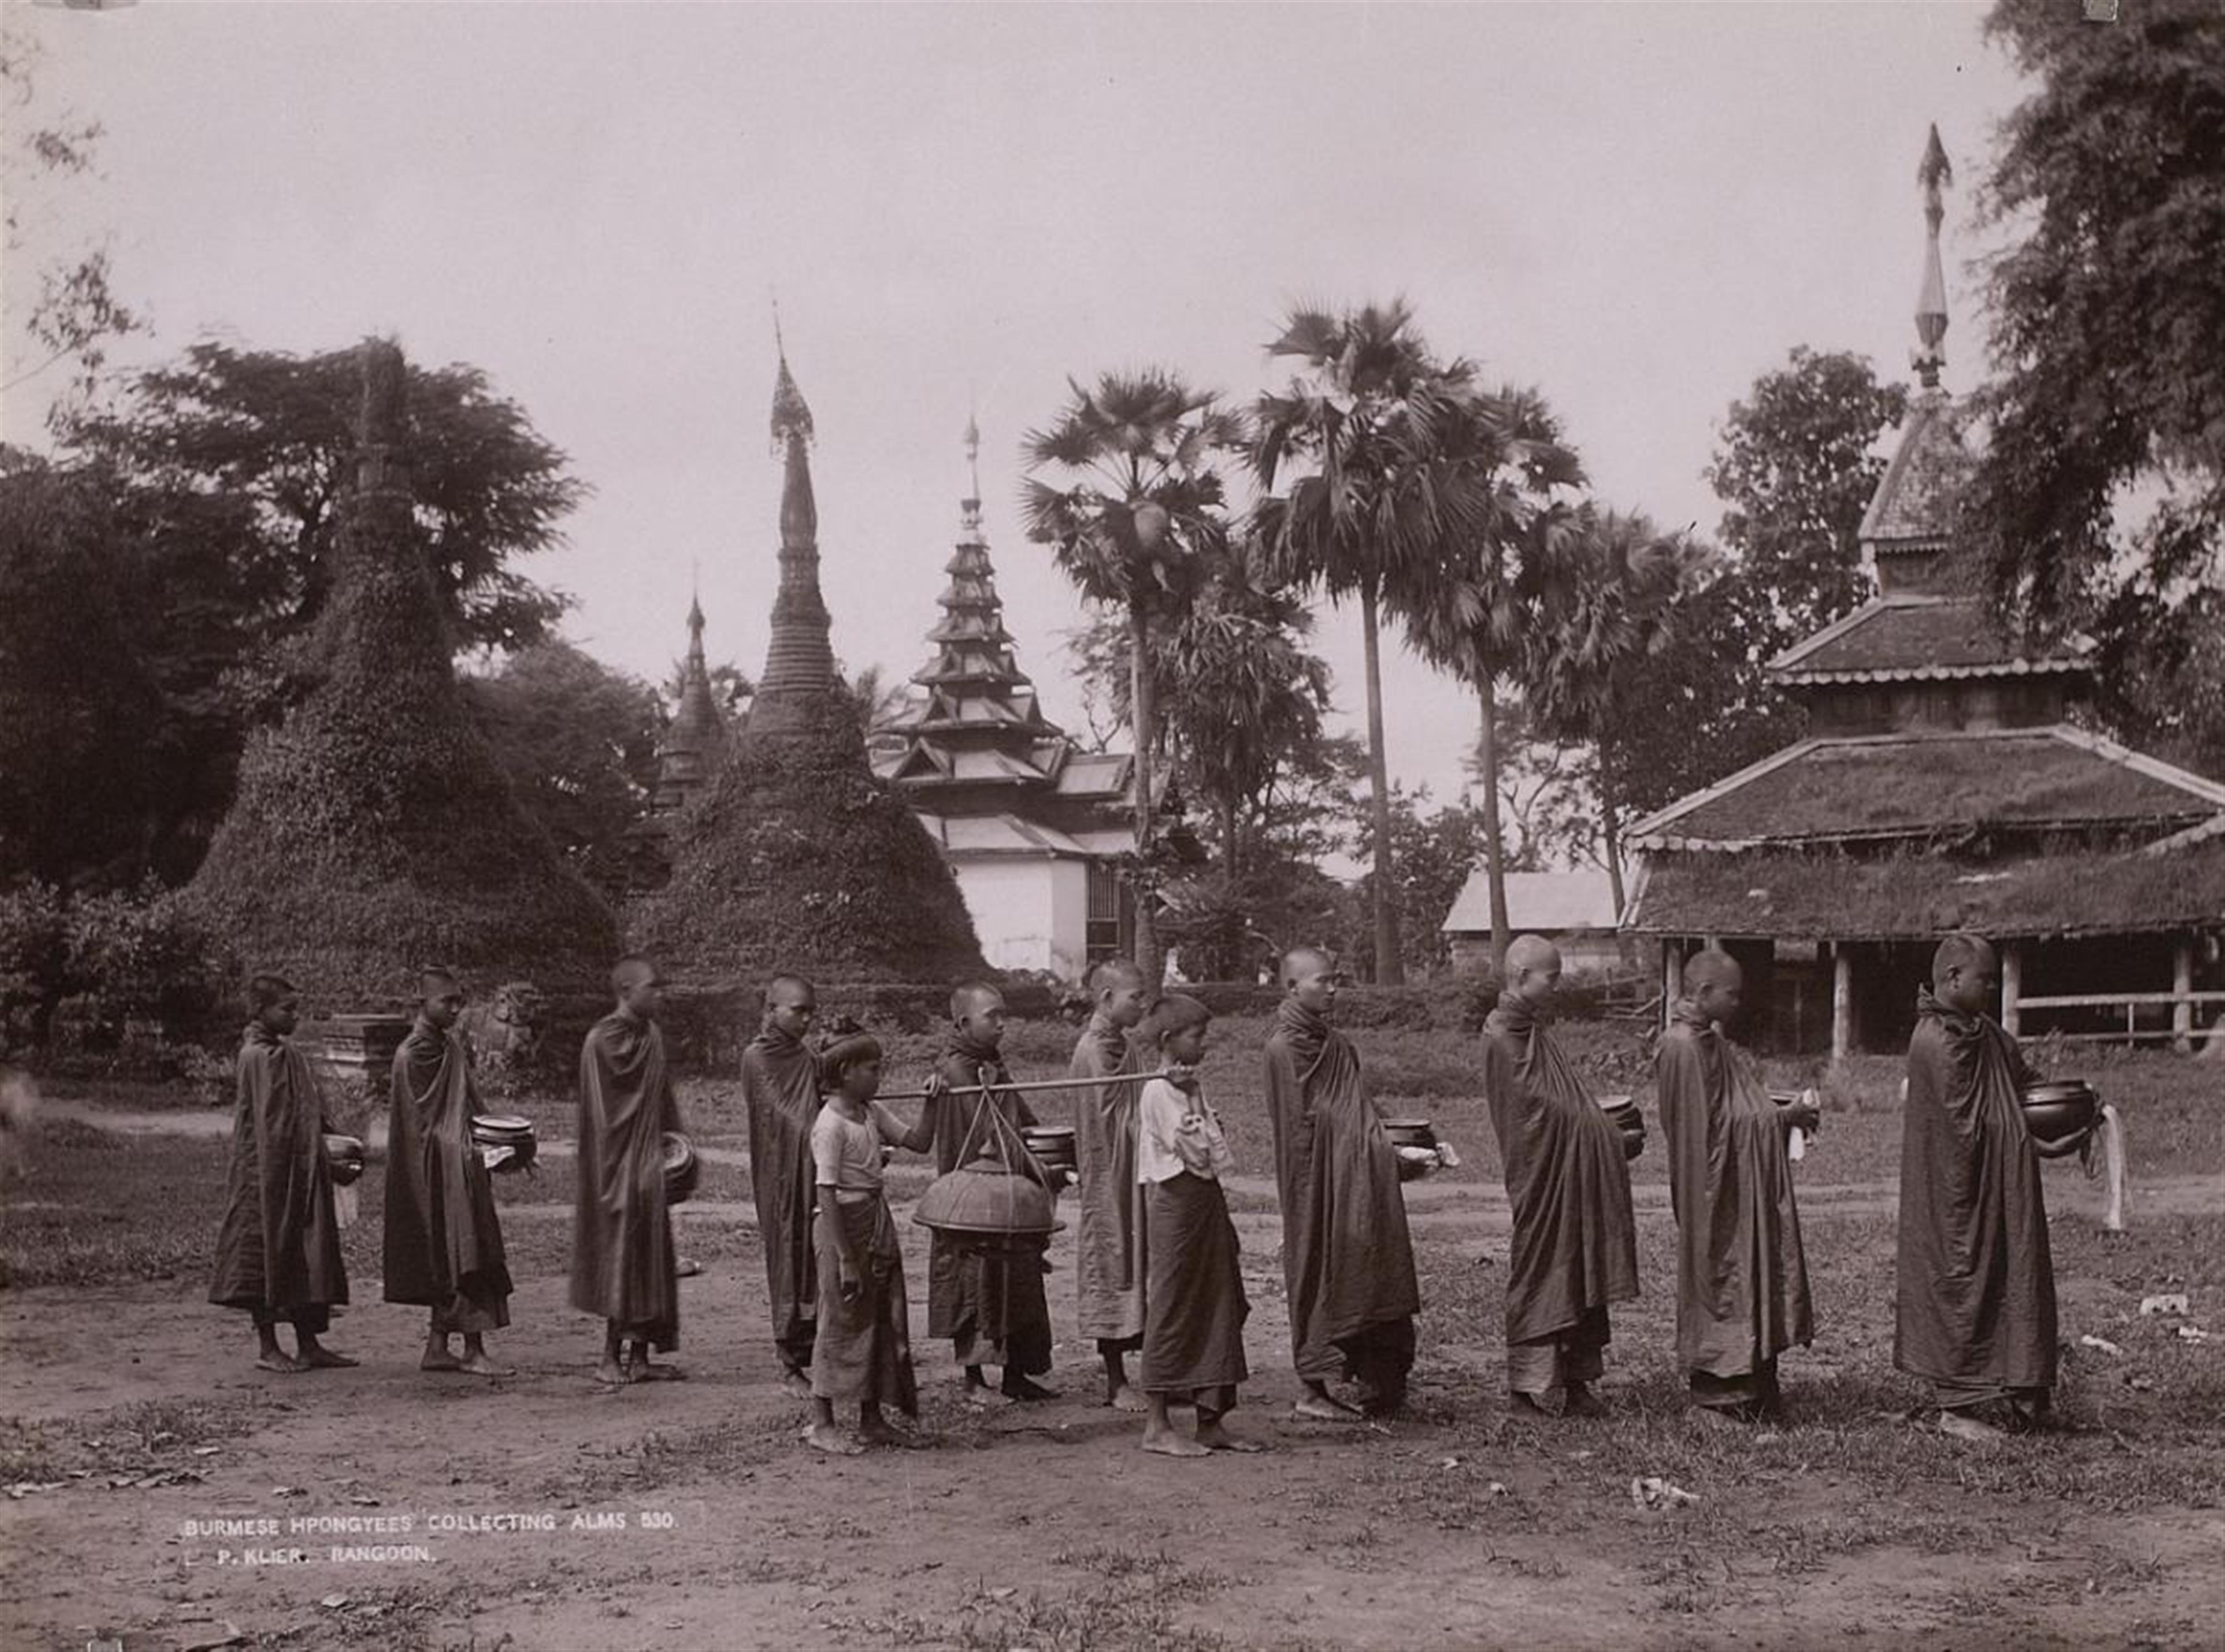 Adolphe Philip Klier - Ohne Titel (Ansichten von Burma) - image-10